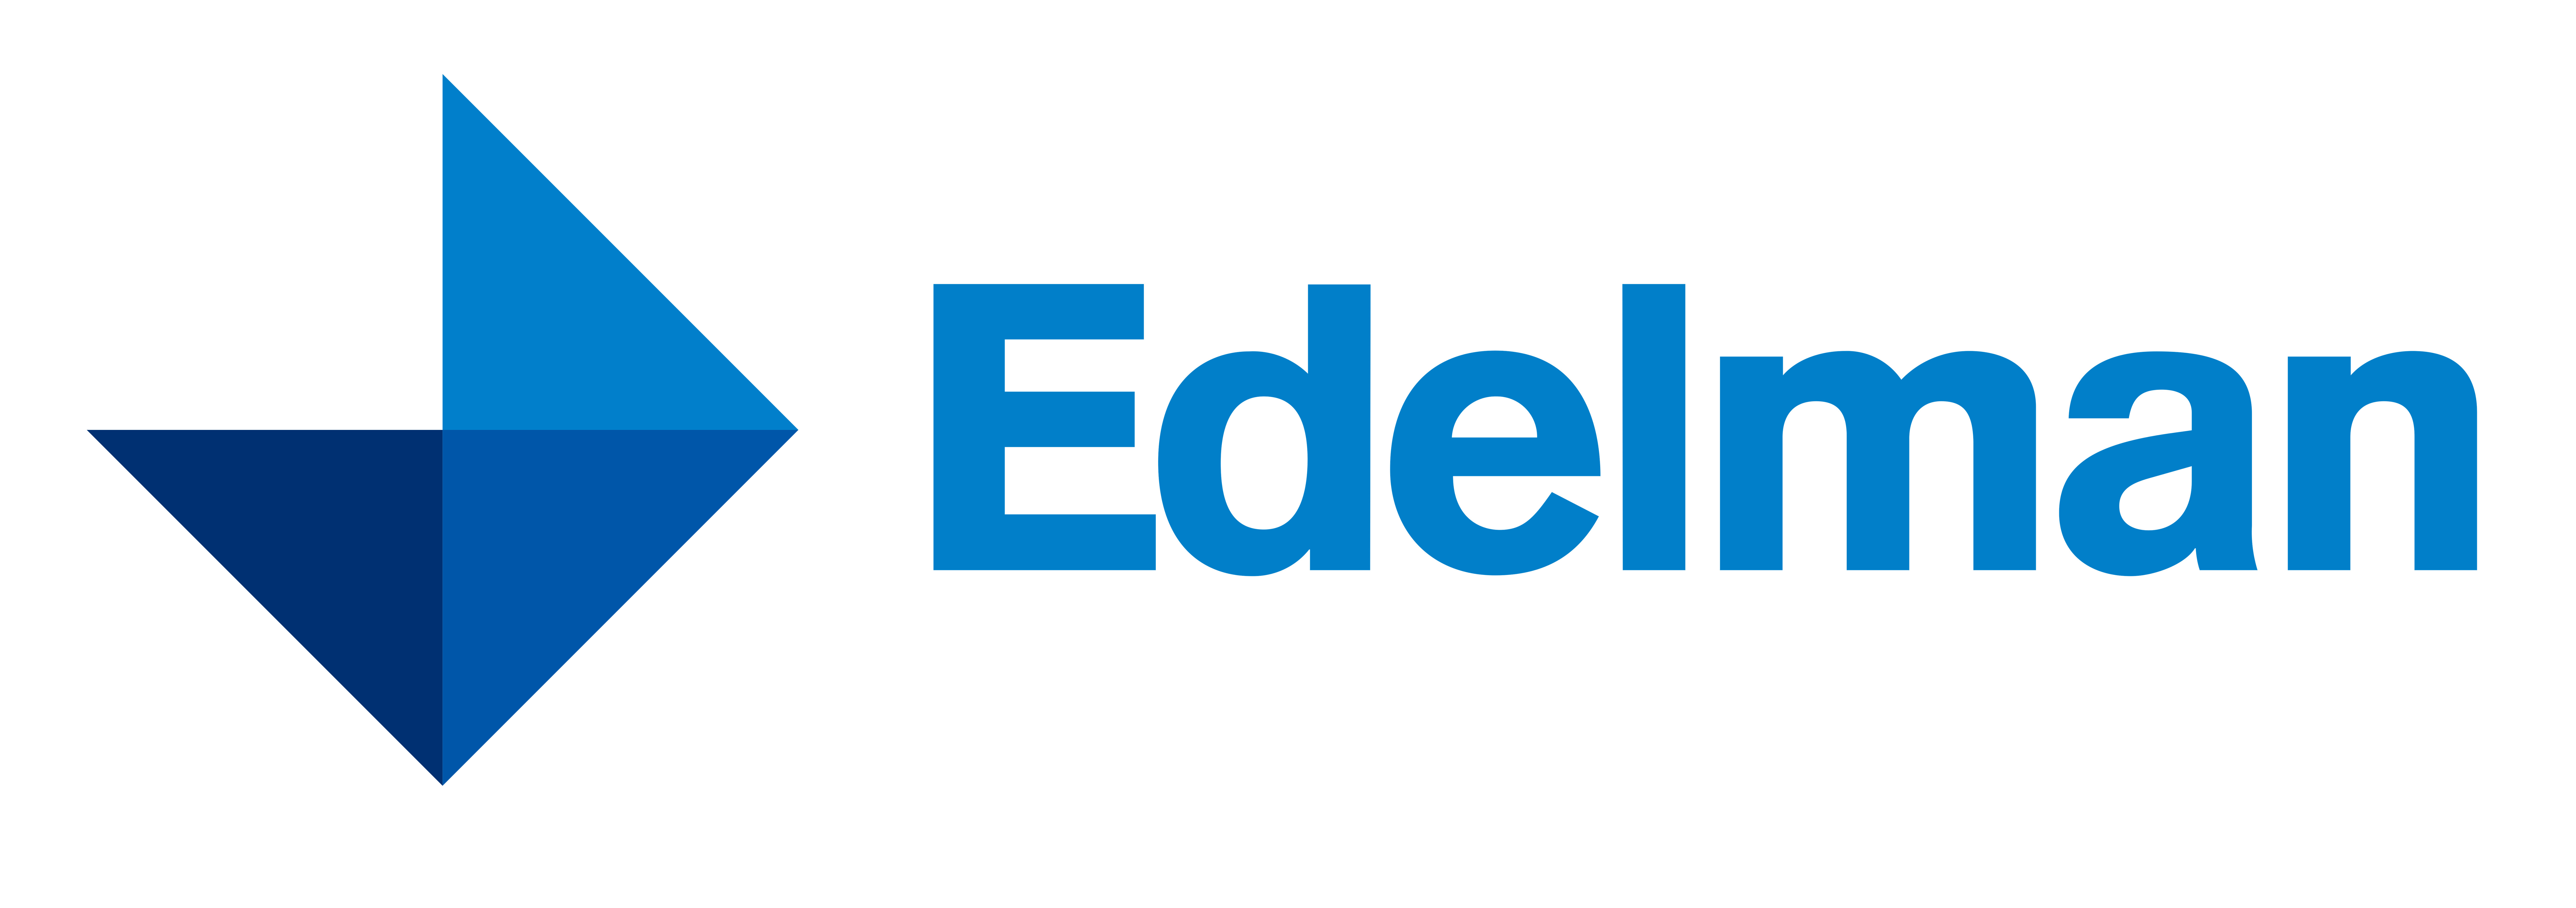 Edelman_logo